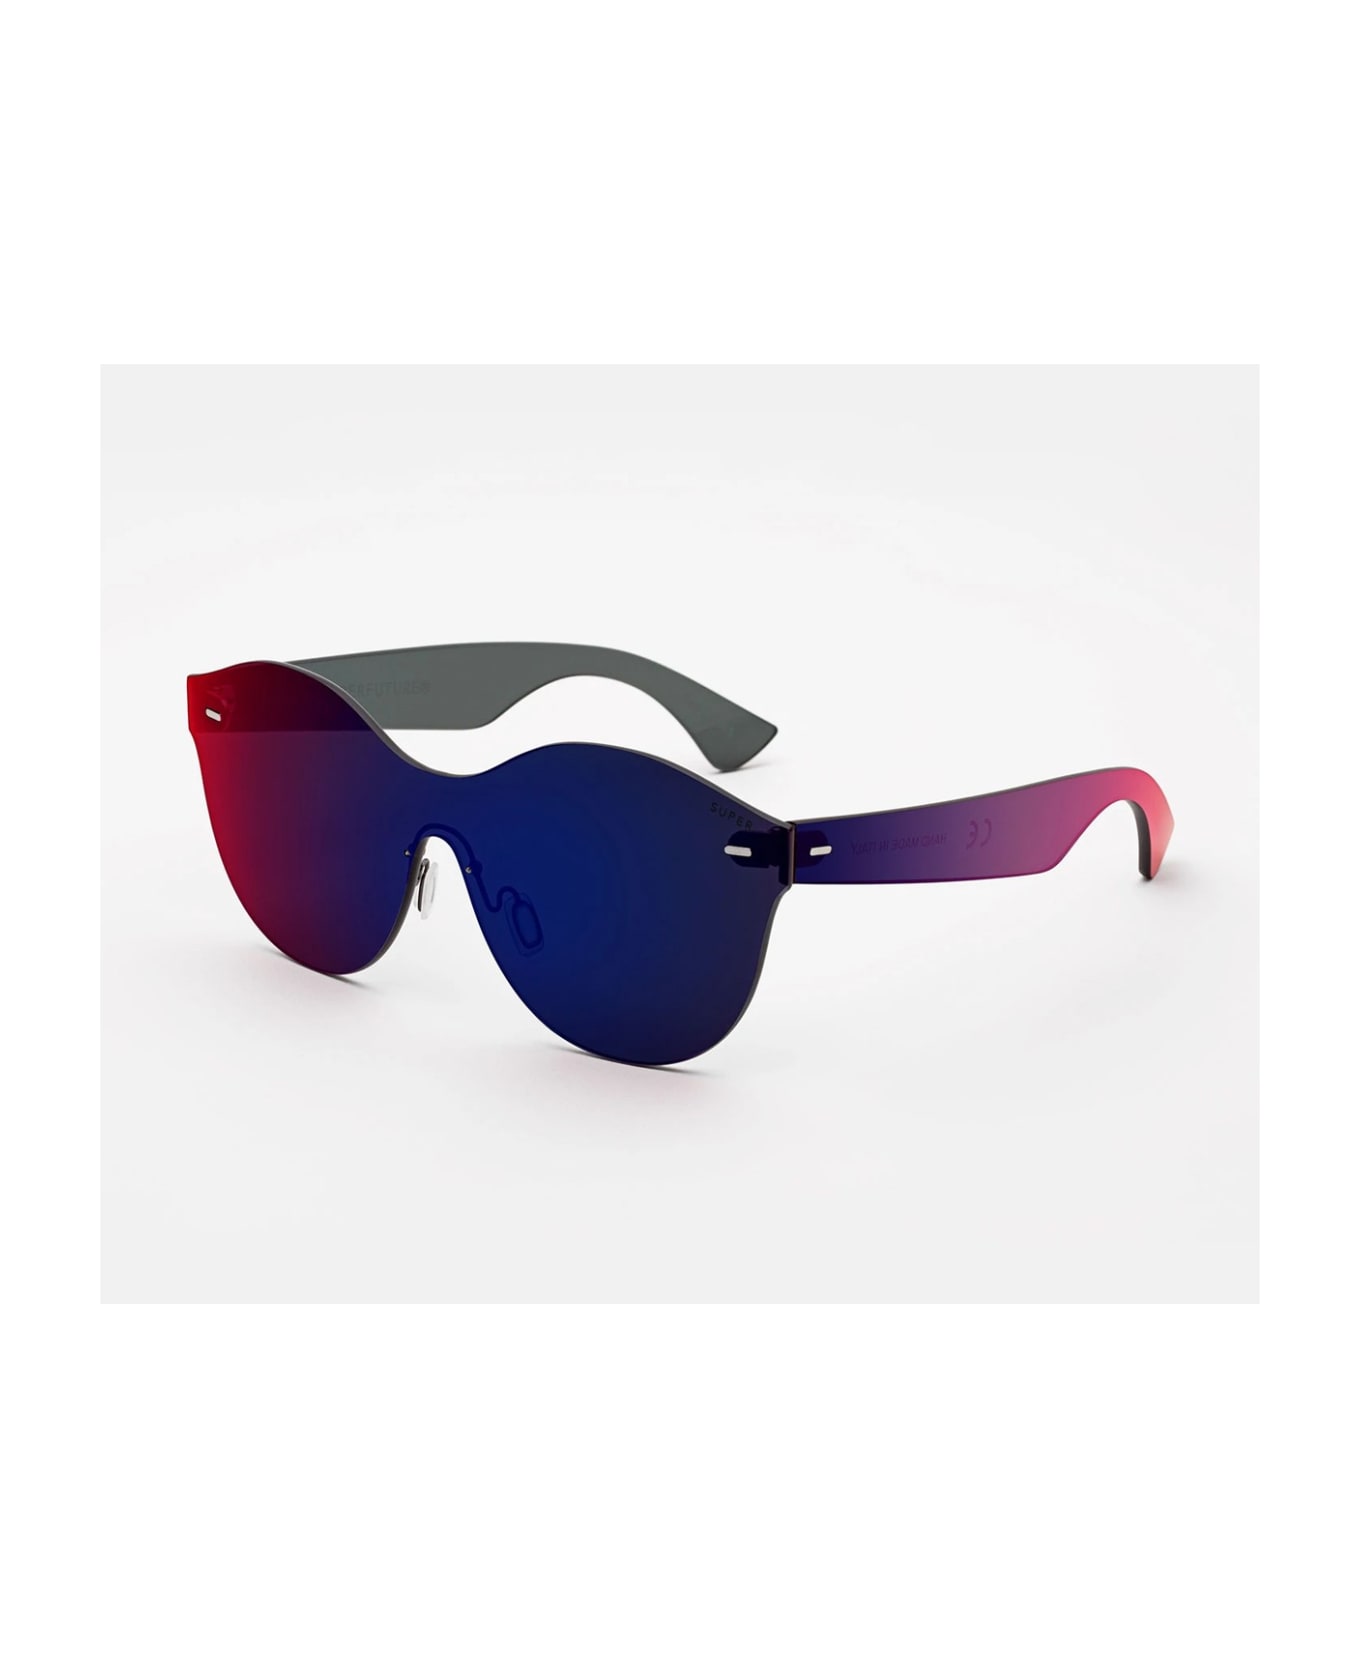 RETROSUPERFUTURE Super Tutto Lente Mona Infrared Sunglasses - Multicolore